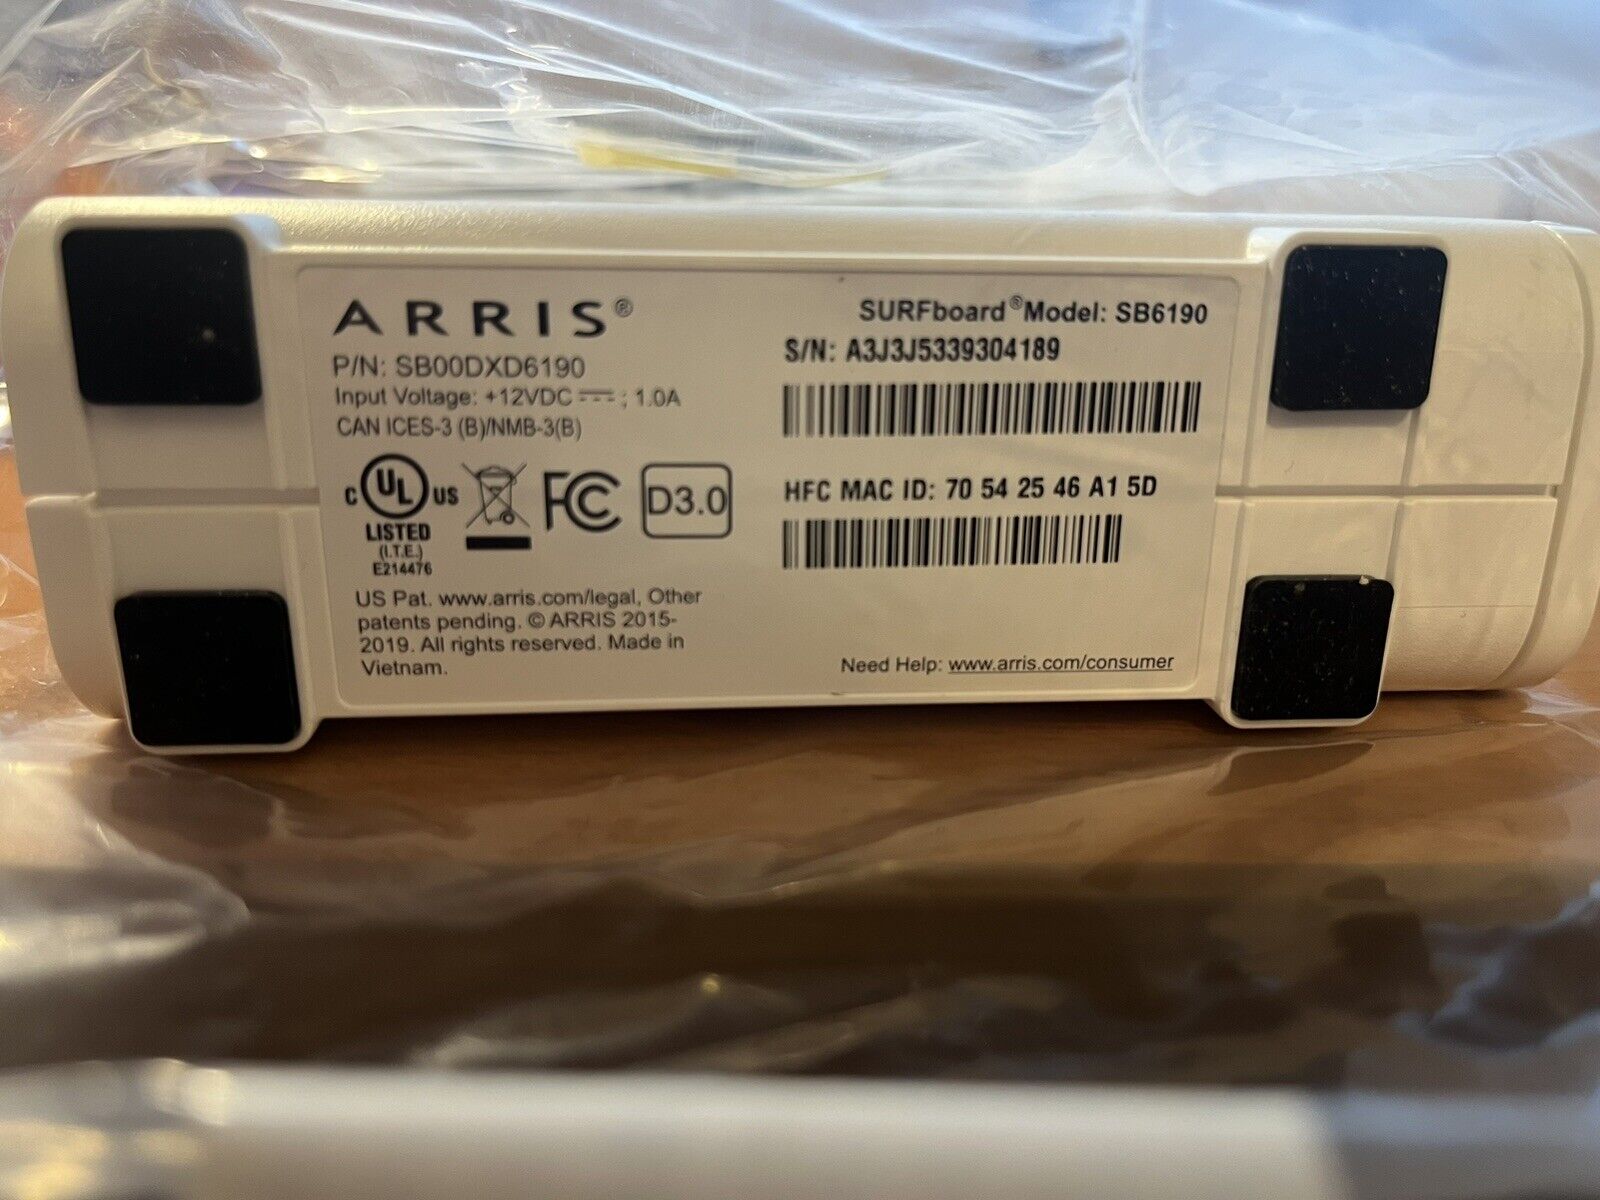 ARRIS SURFboard DOCSIS 3.0 Cable Modem SB6190 - White Open Box